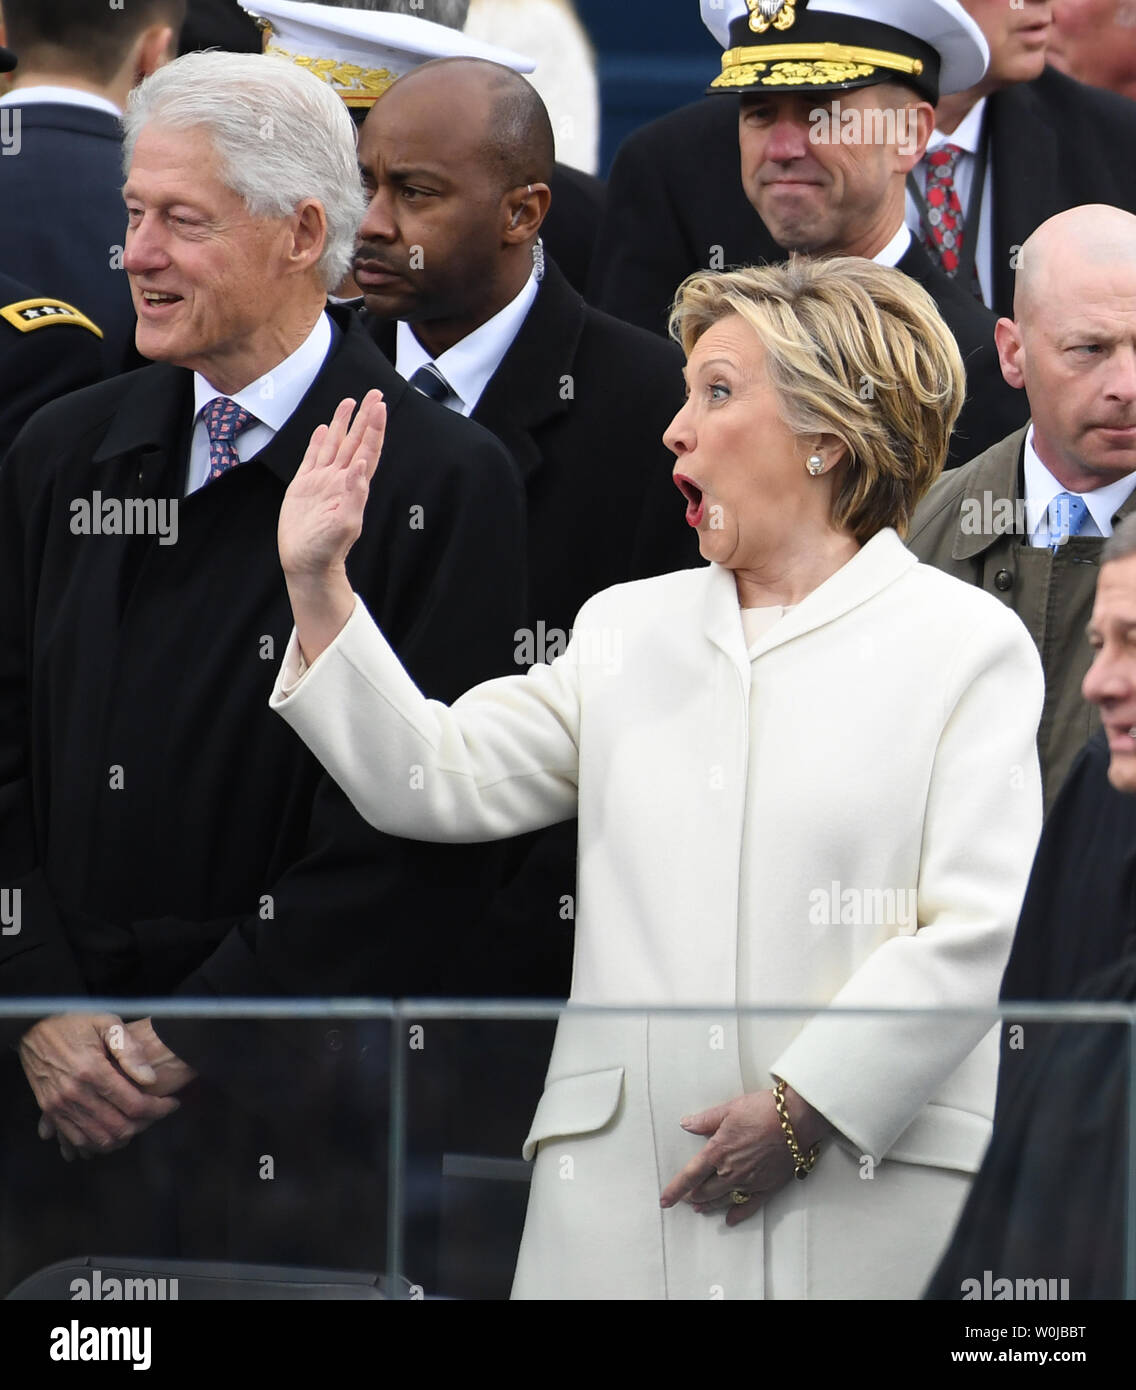 L'ancien Président Bill Clinton (L) et Hillary Clinton accueillent les clients à l'inauguration le 20 janvier 2017 à Washington, D.C. L'atout de Donald devient le 45e président des États-Unis. Photo de Pat Benic/UPI Banque D'Images